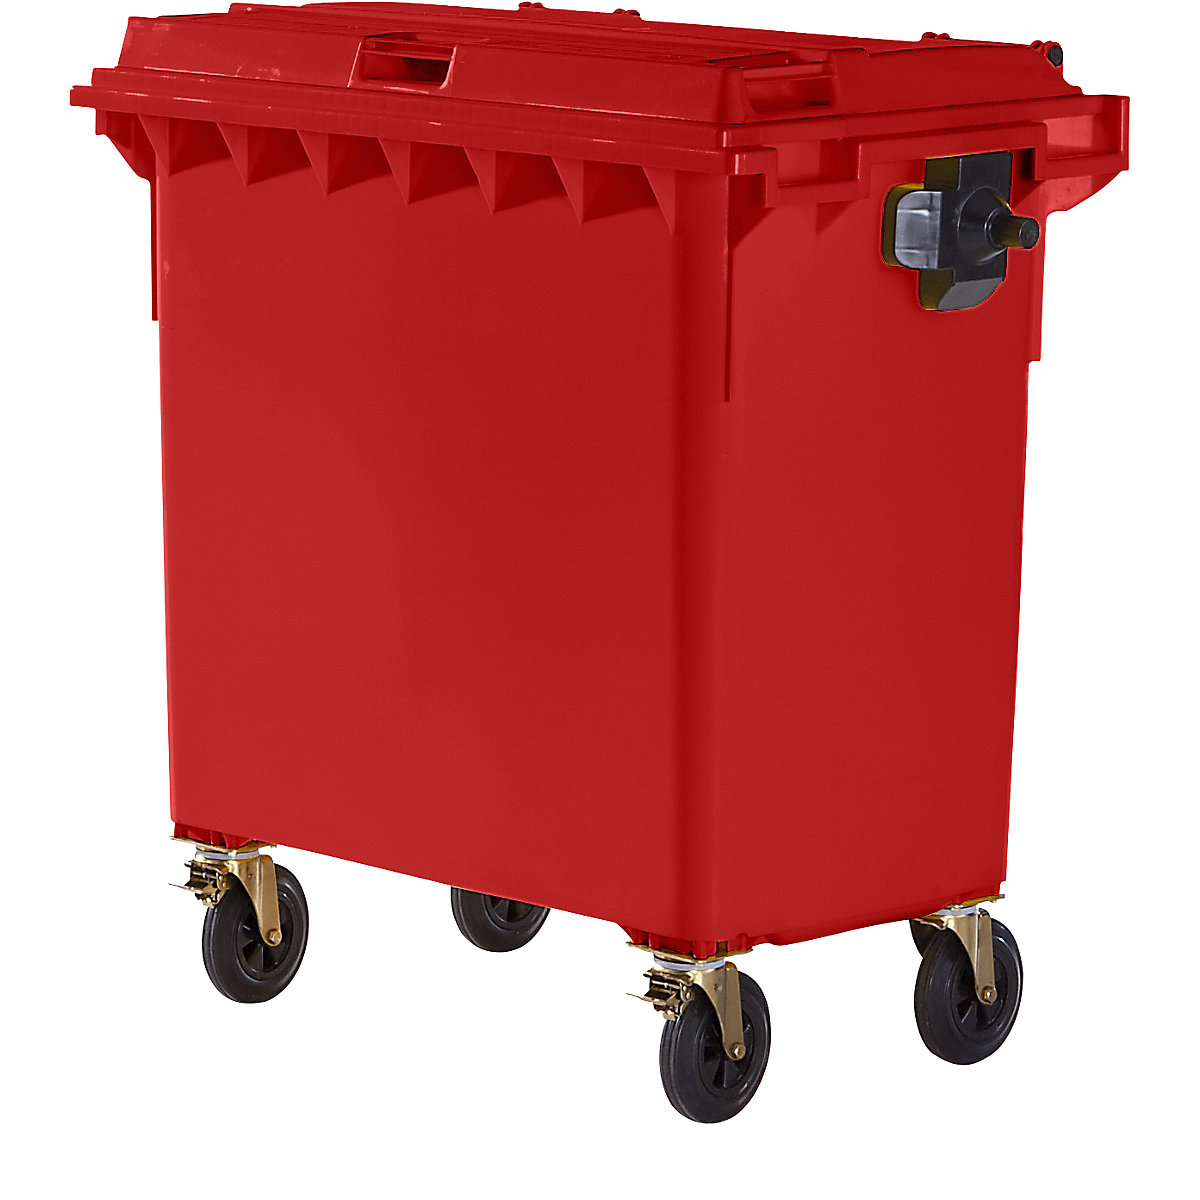 Pojemnik na odpady, z tworzywa, DIN EN 840, poj. 770 l, szer. x wys. x głęb. 1360 x 1330 x 770 mm, czerwony, dostawa od 5 szt.-6